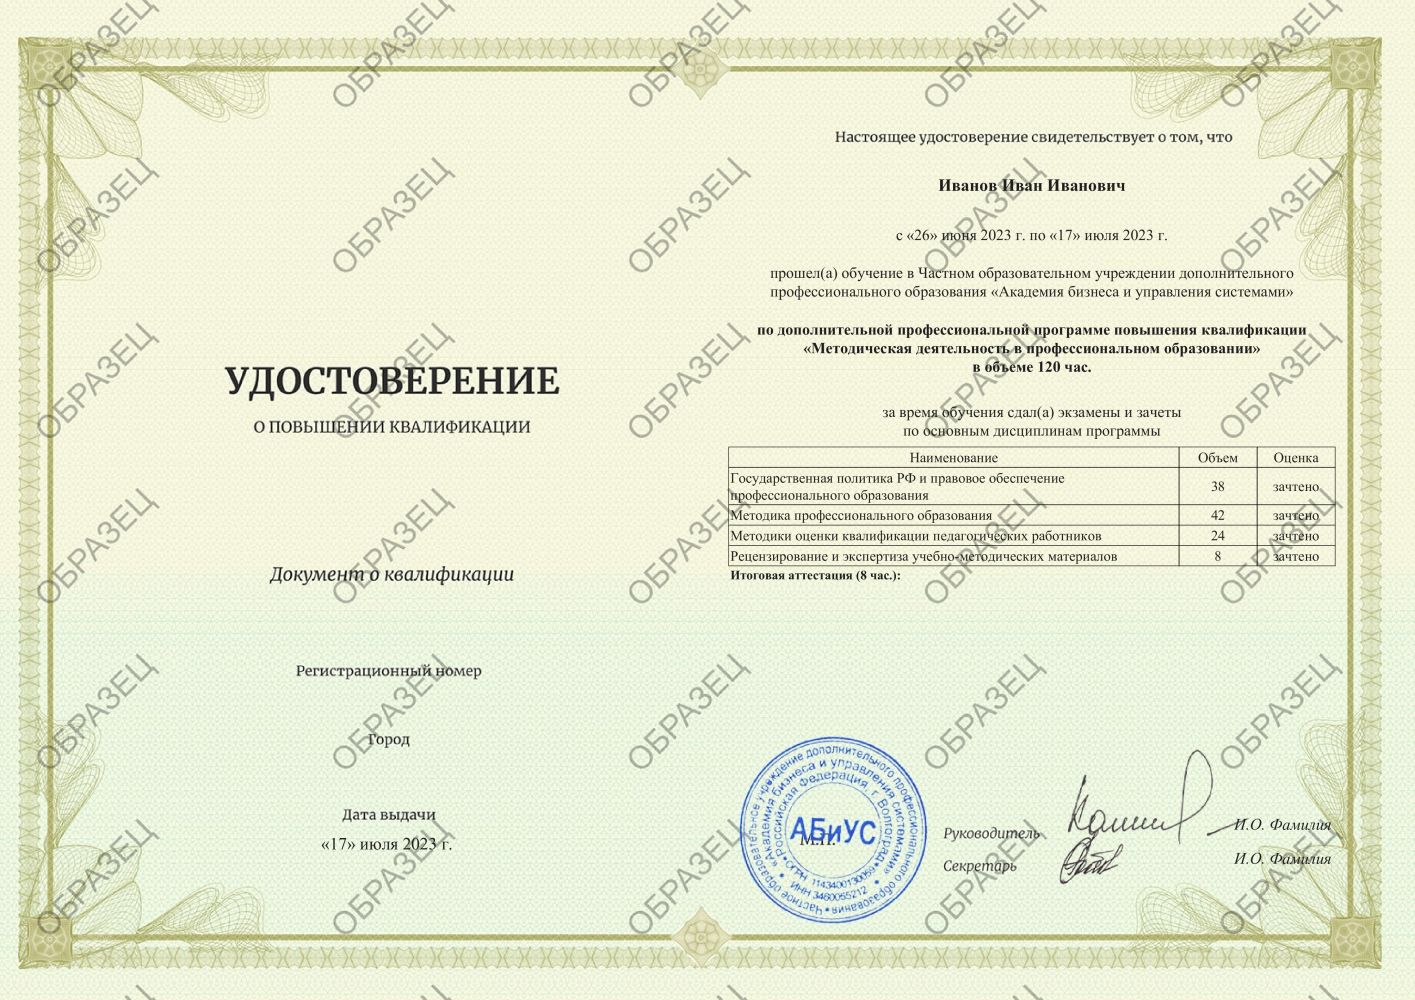 Удостоверение Методическая деятельность в профессиональном образовании 120 часов 4125 руб.